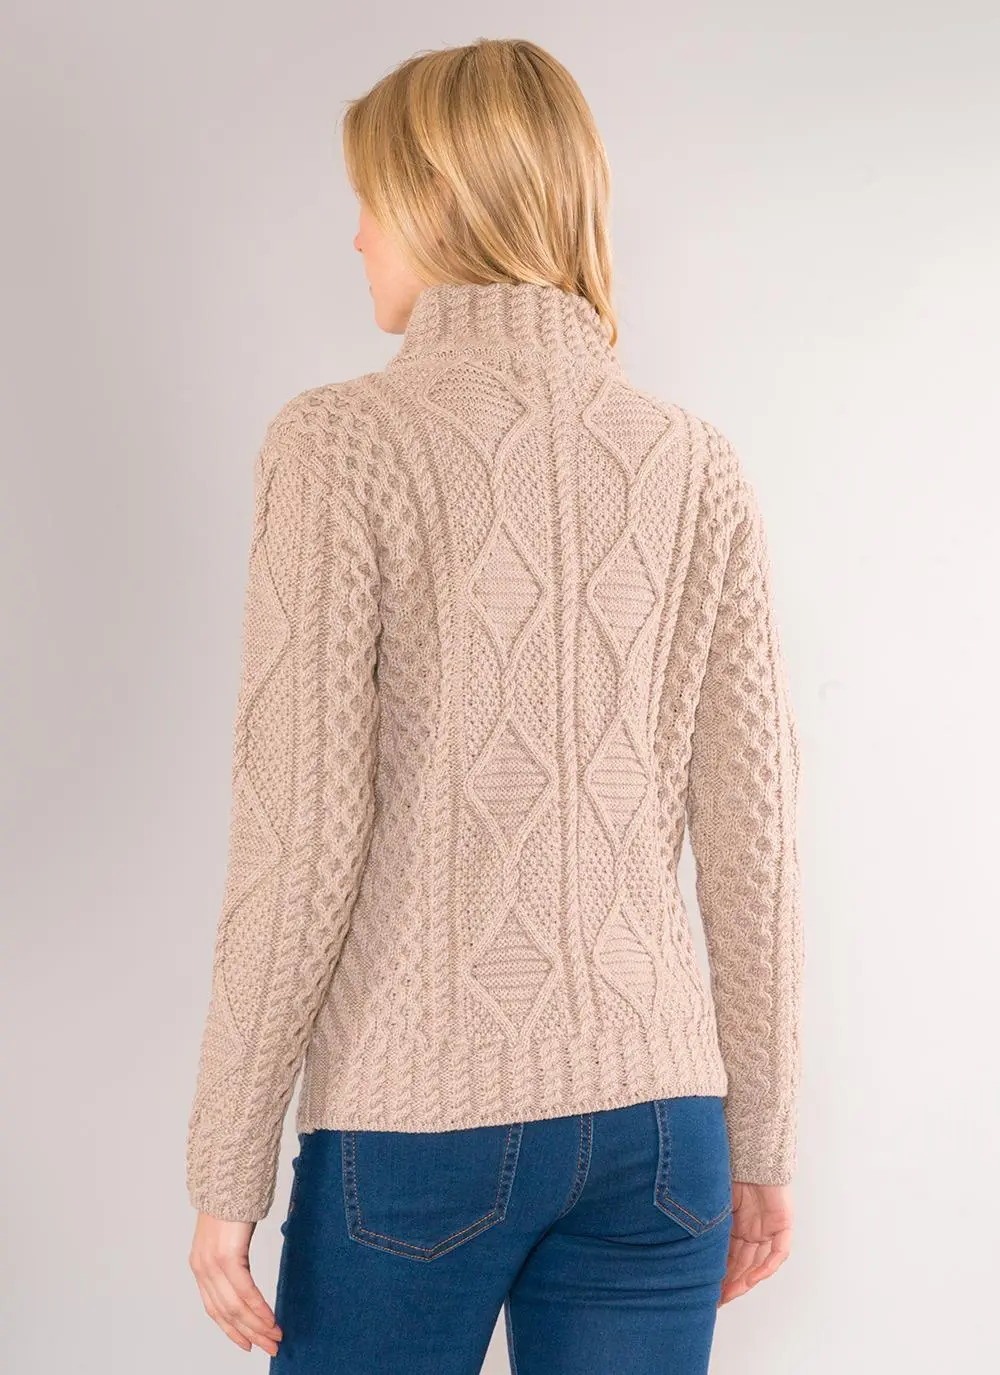 Lucy Half-Zip Aran Sweater